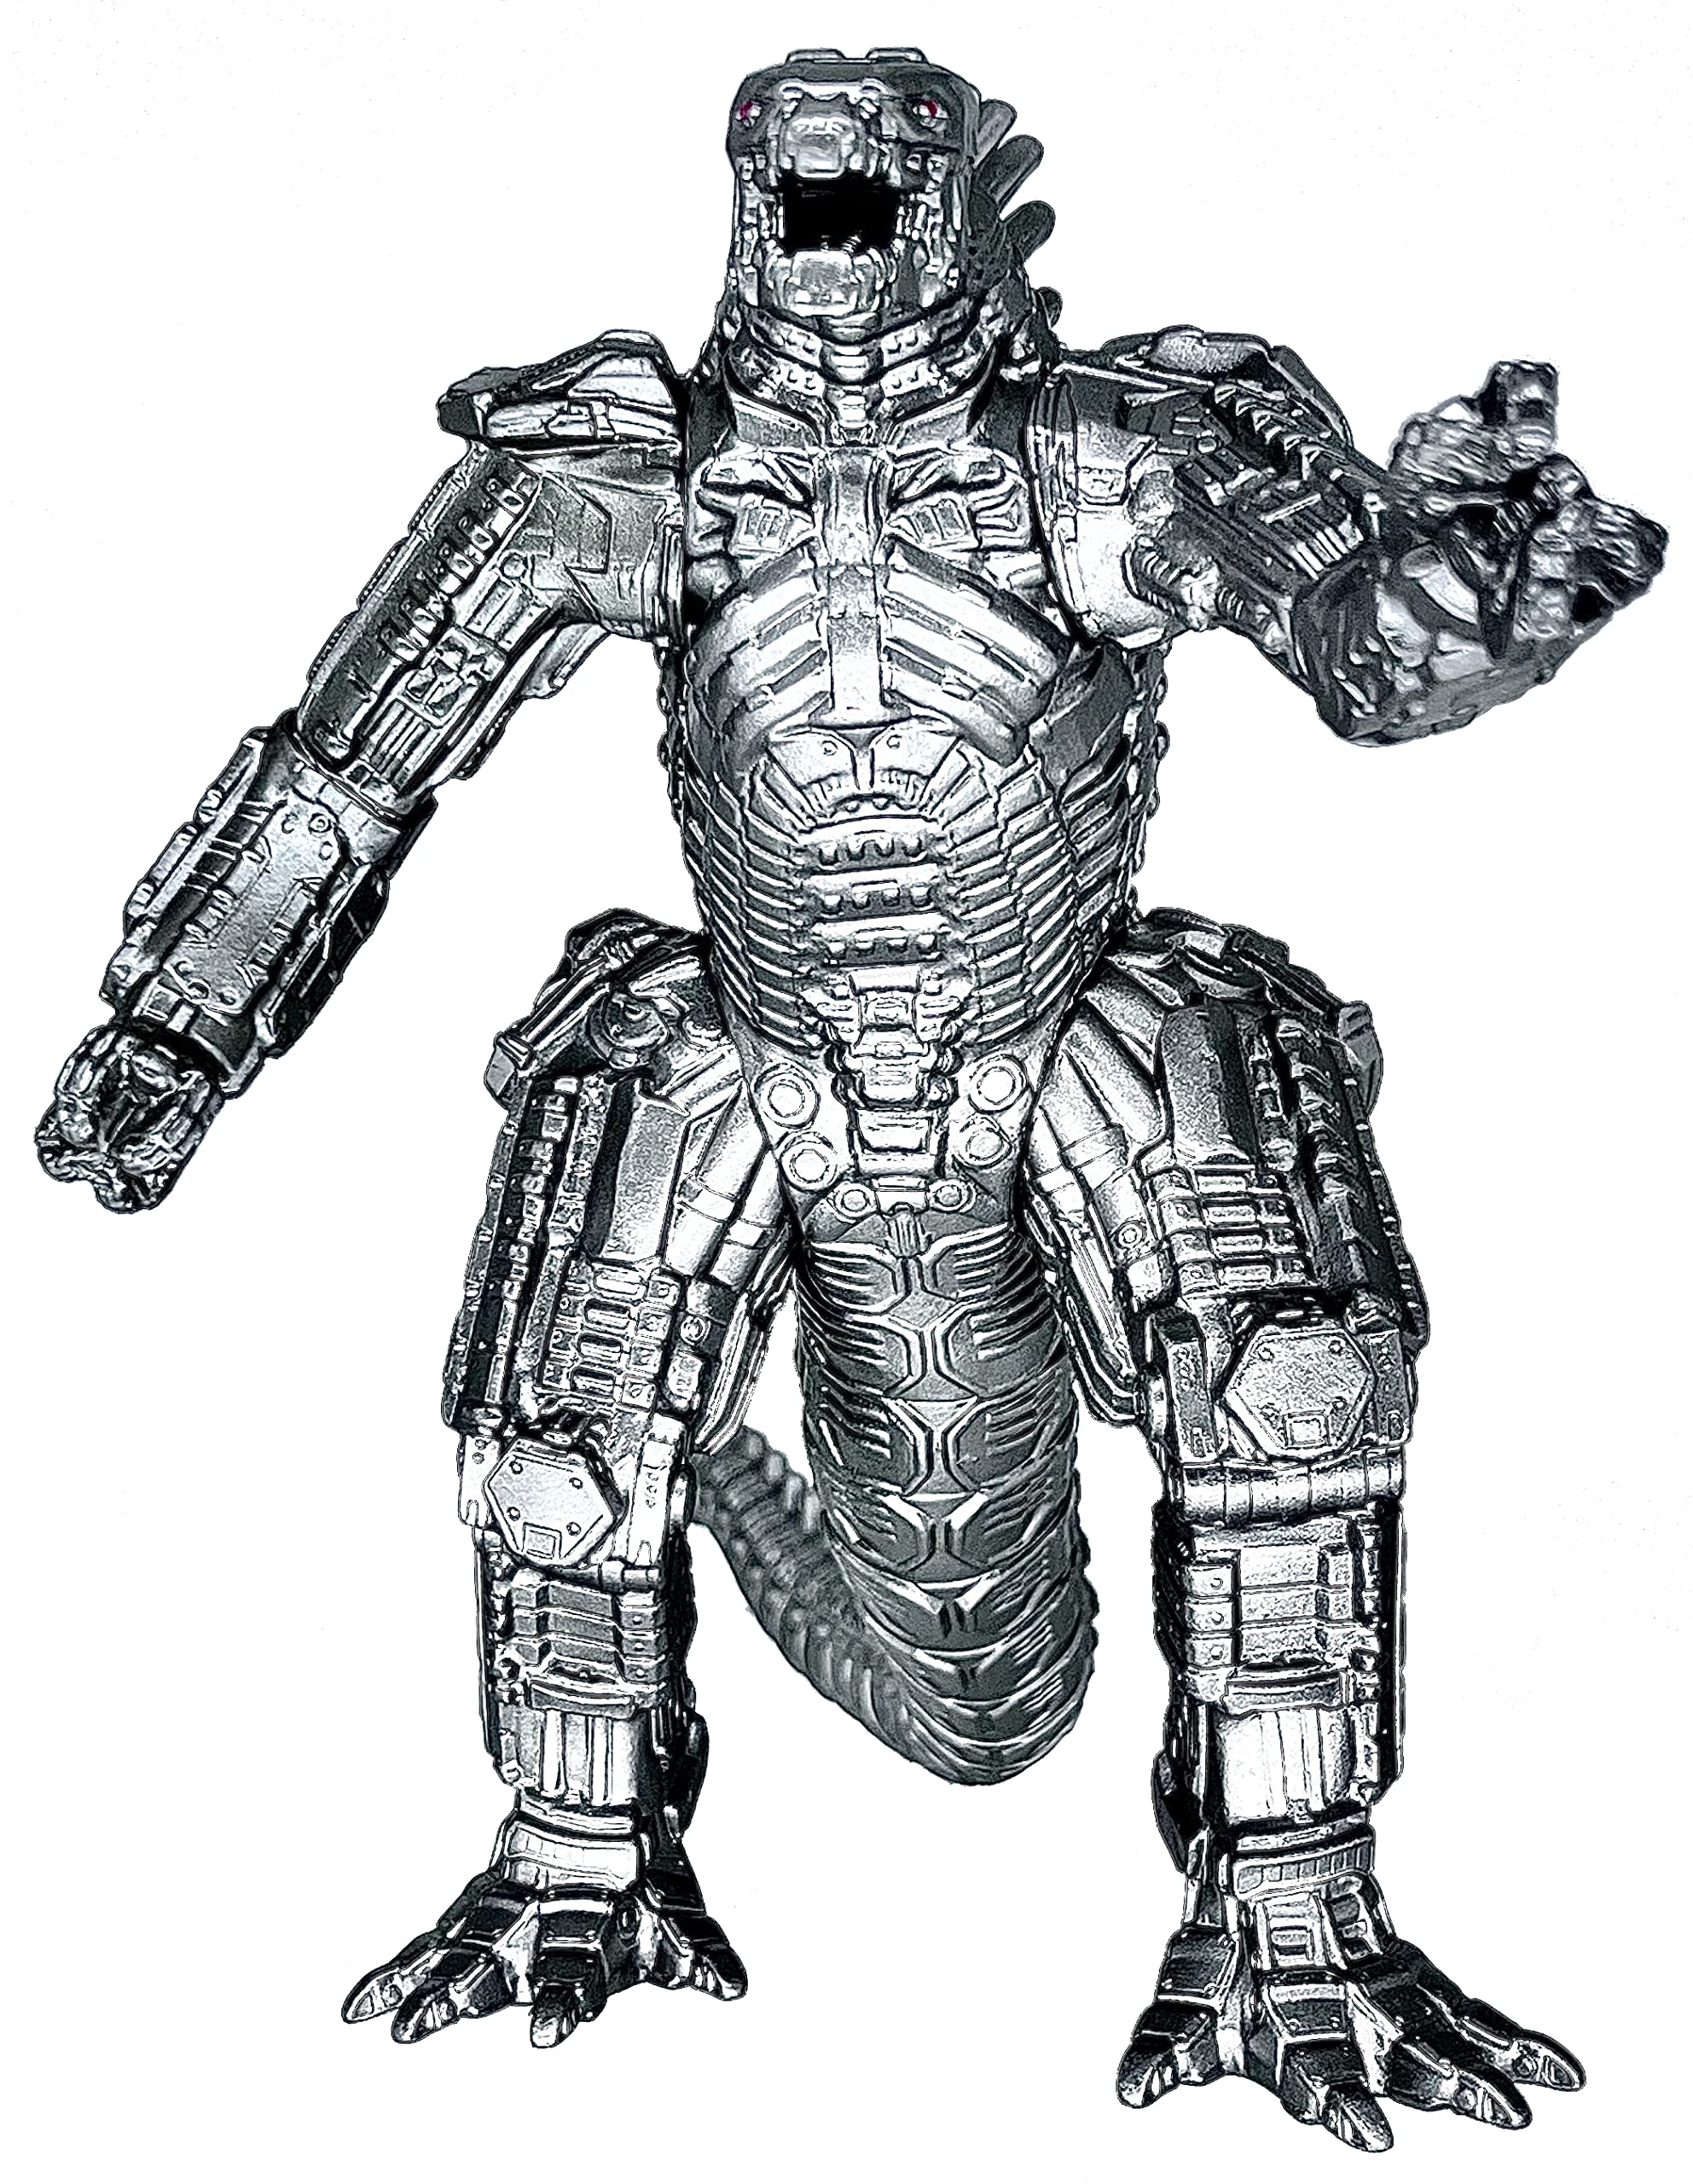 MechaGodzilla là một phiên bản robot của Godzilla, được tạo ra để chiến đấu với nó. Với sức mạnh và khả năng tiêu diệt, MechaGodzilla không phải là đối thủ dễ chịu cho Godzilla. Hãy xem hình ảnh để khám phá vẻ đẹp và tính năng đặc biệt của MechaGodzilla.